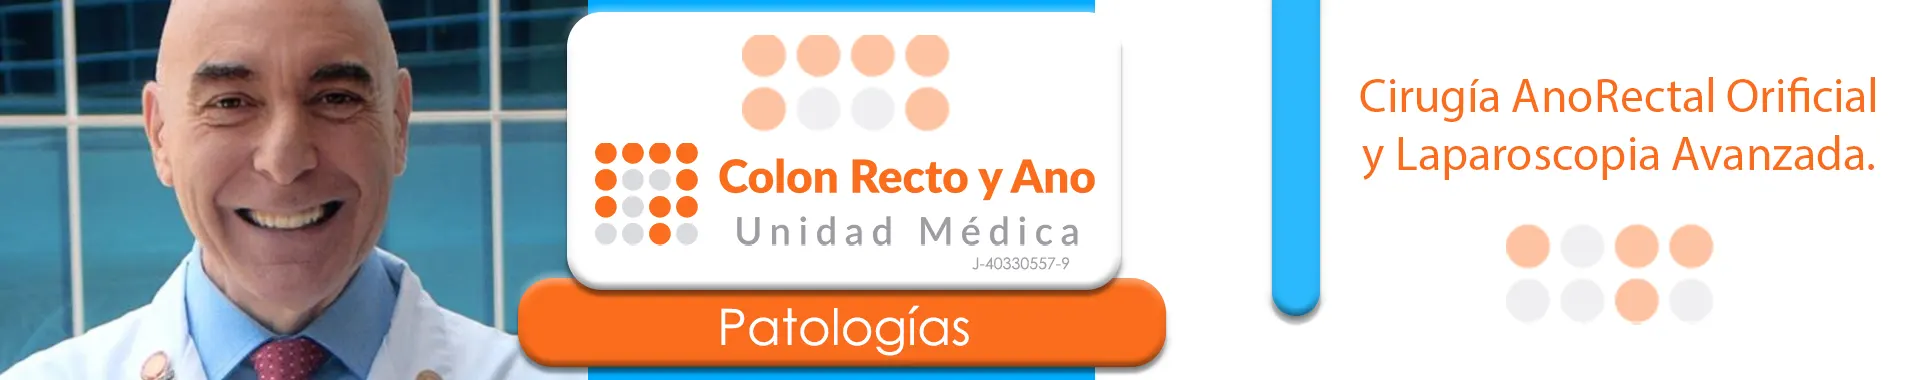 Imagen 3 del perfil de Colon Recto y Ano Unidad Médica